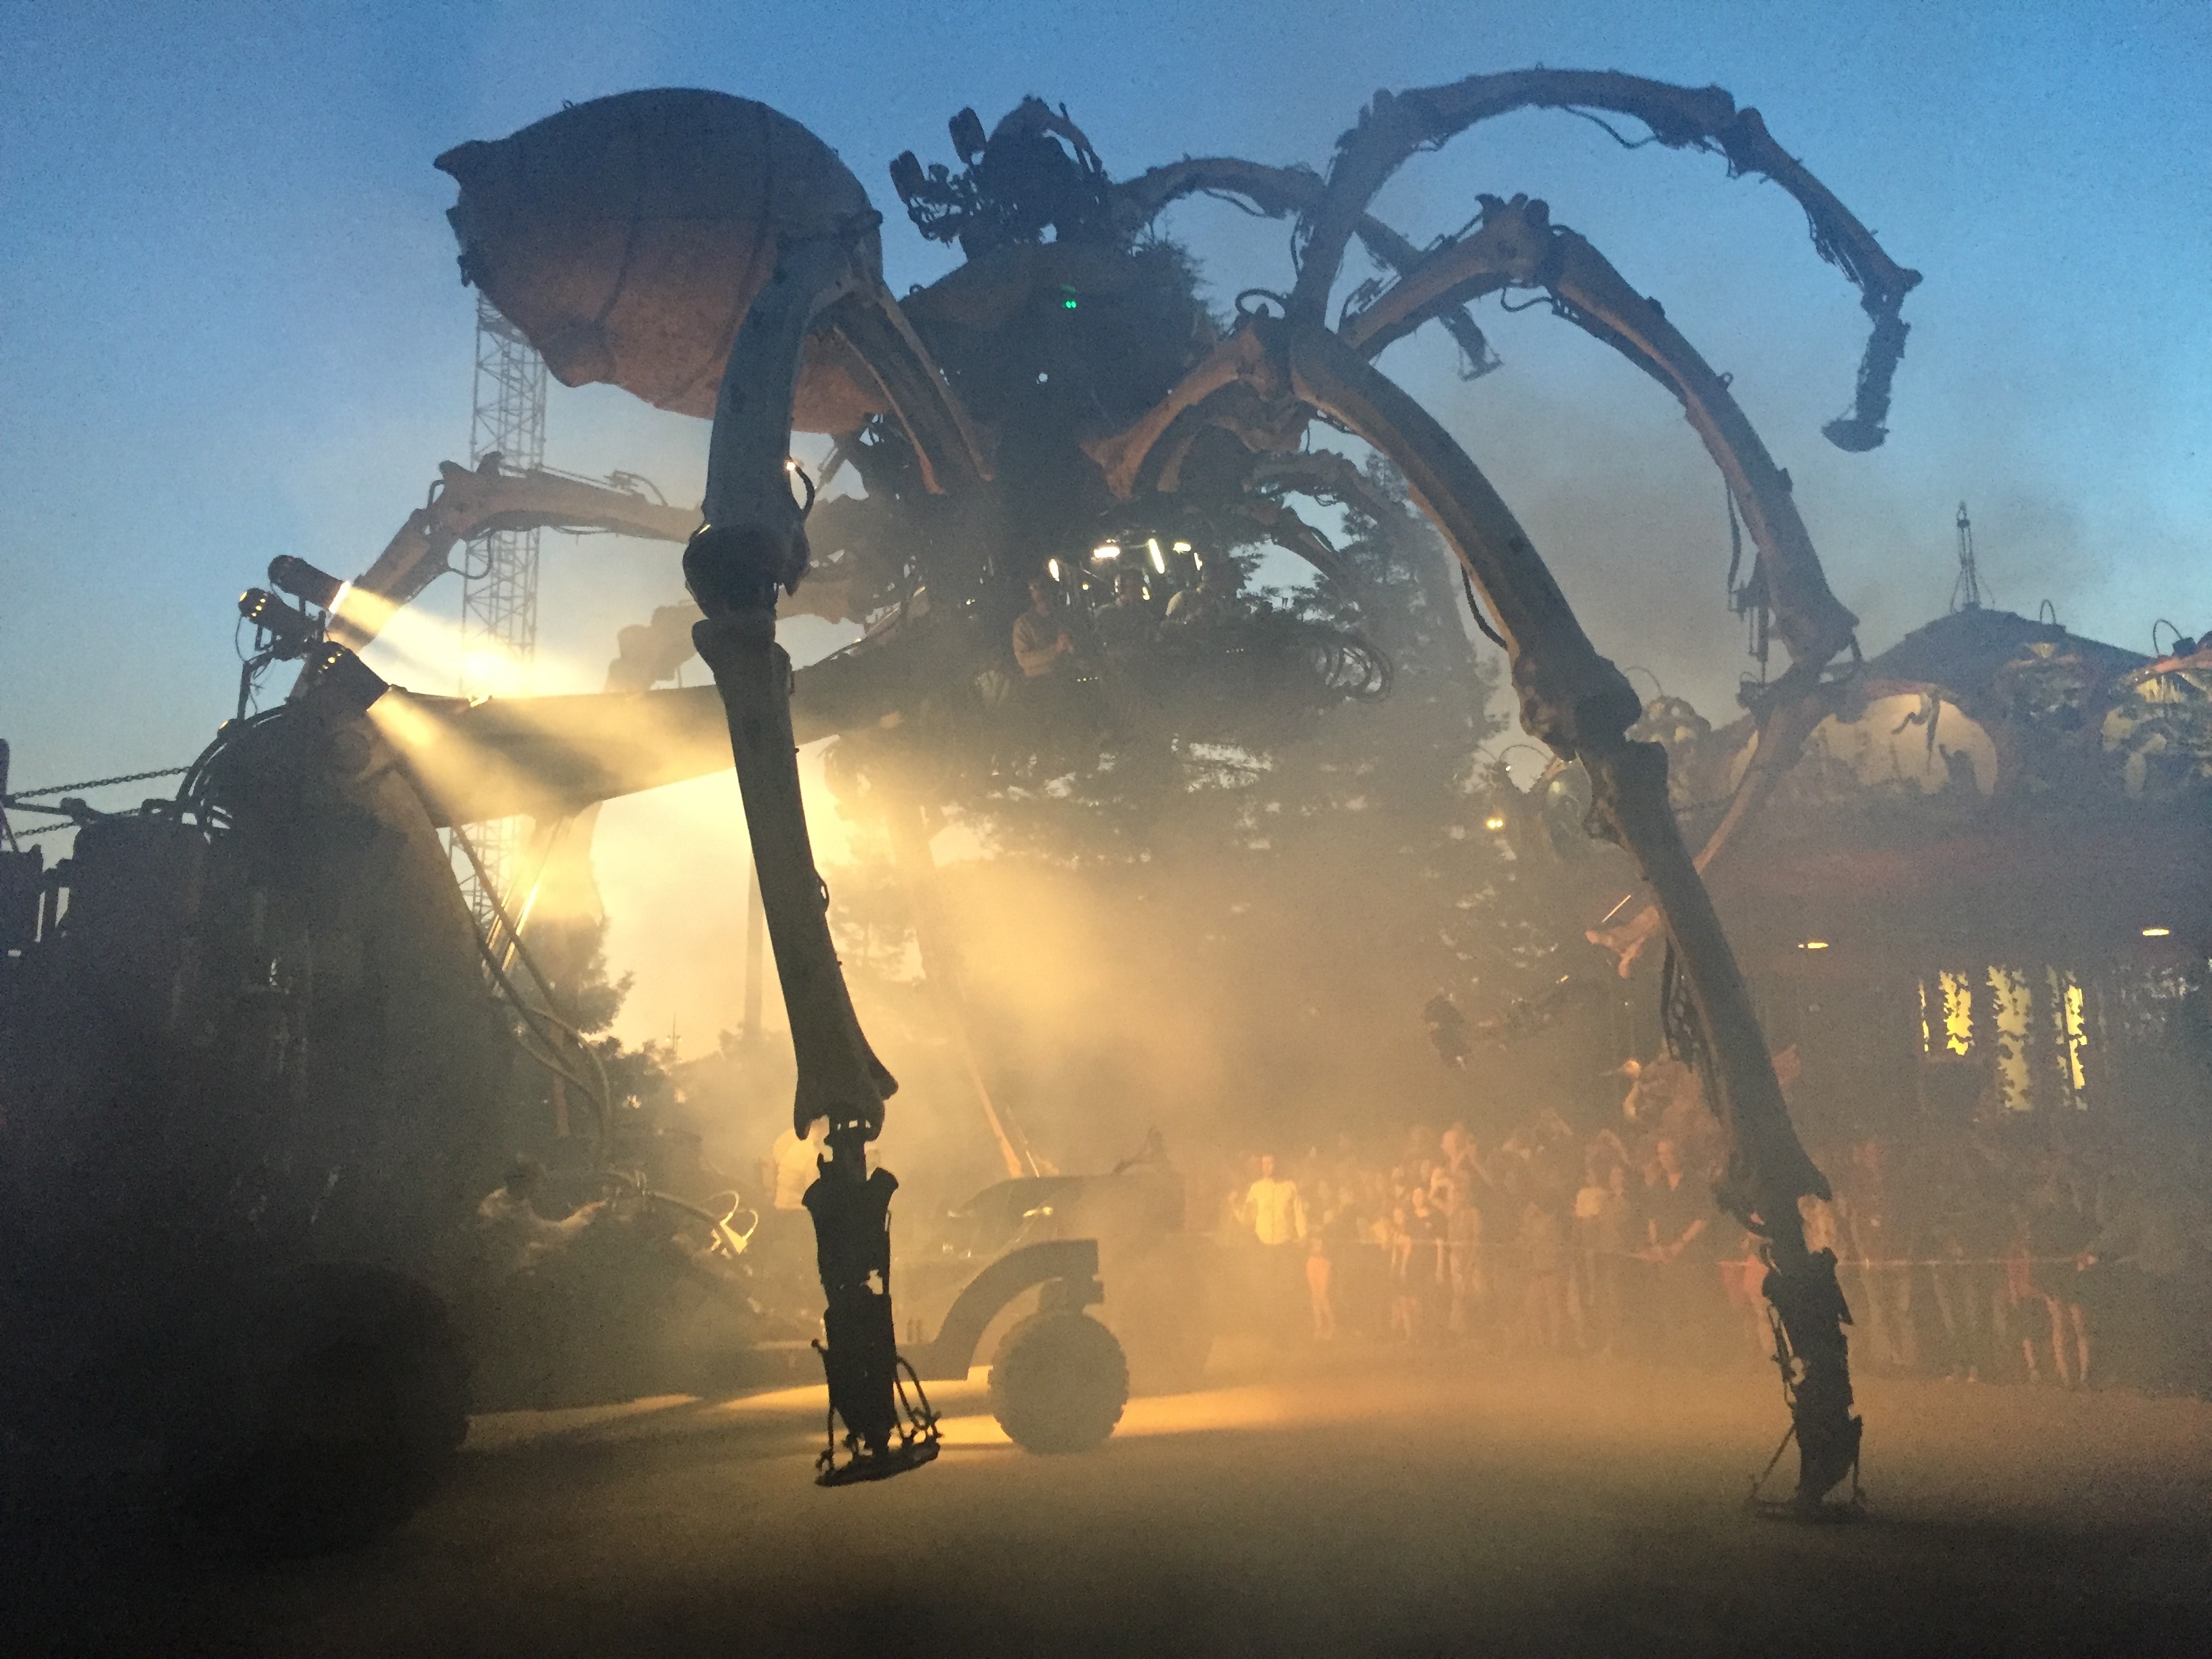 The Giant Spider Awakes in Nantes